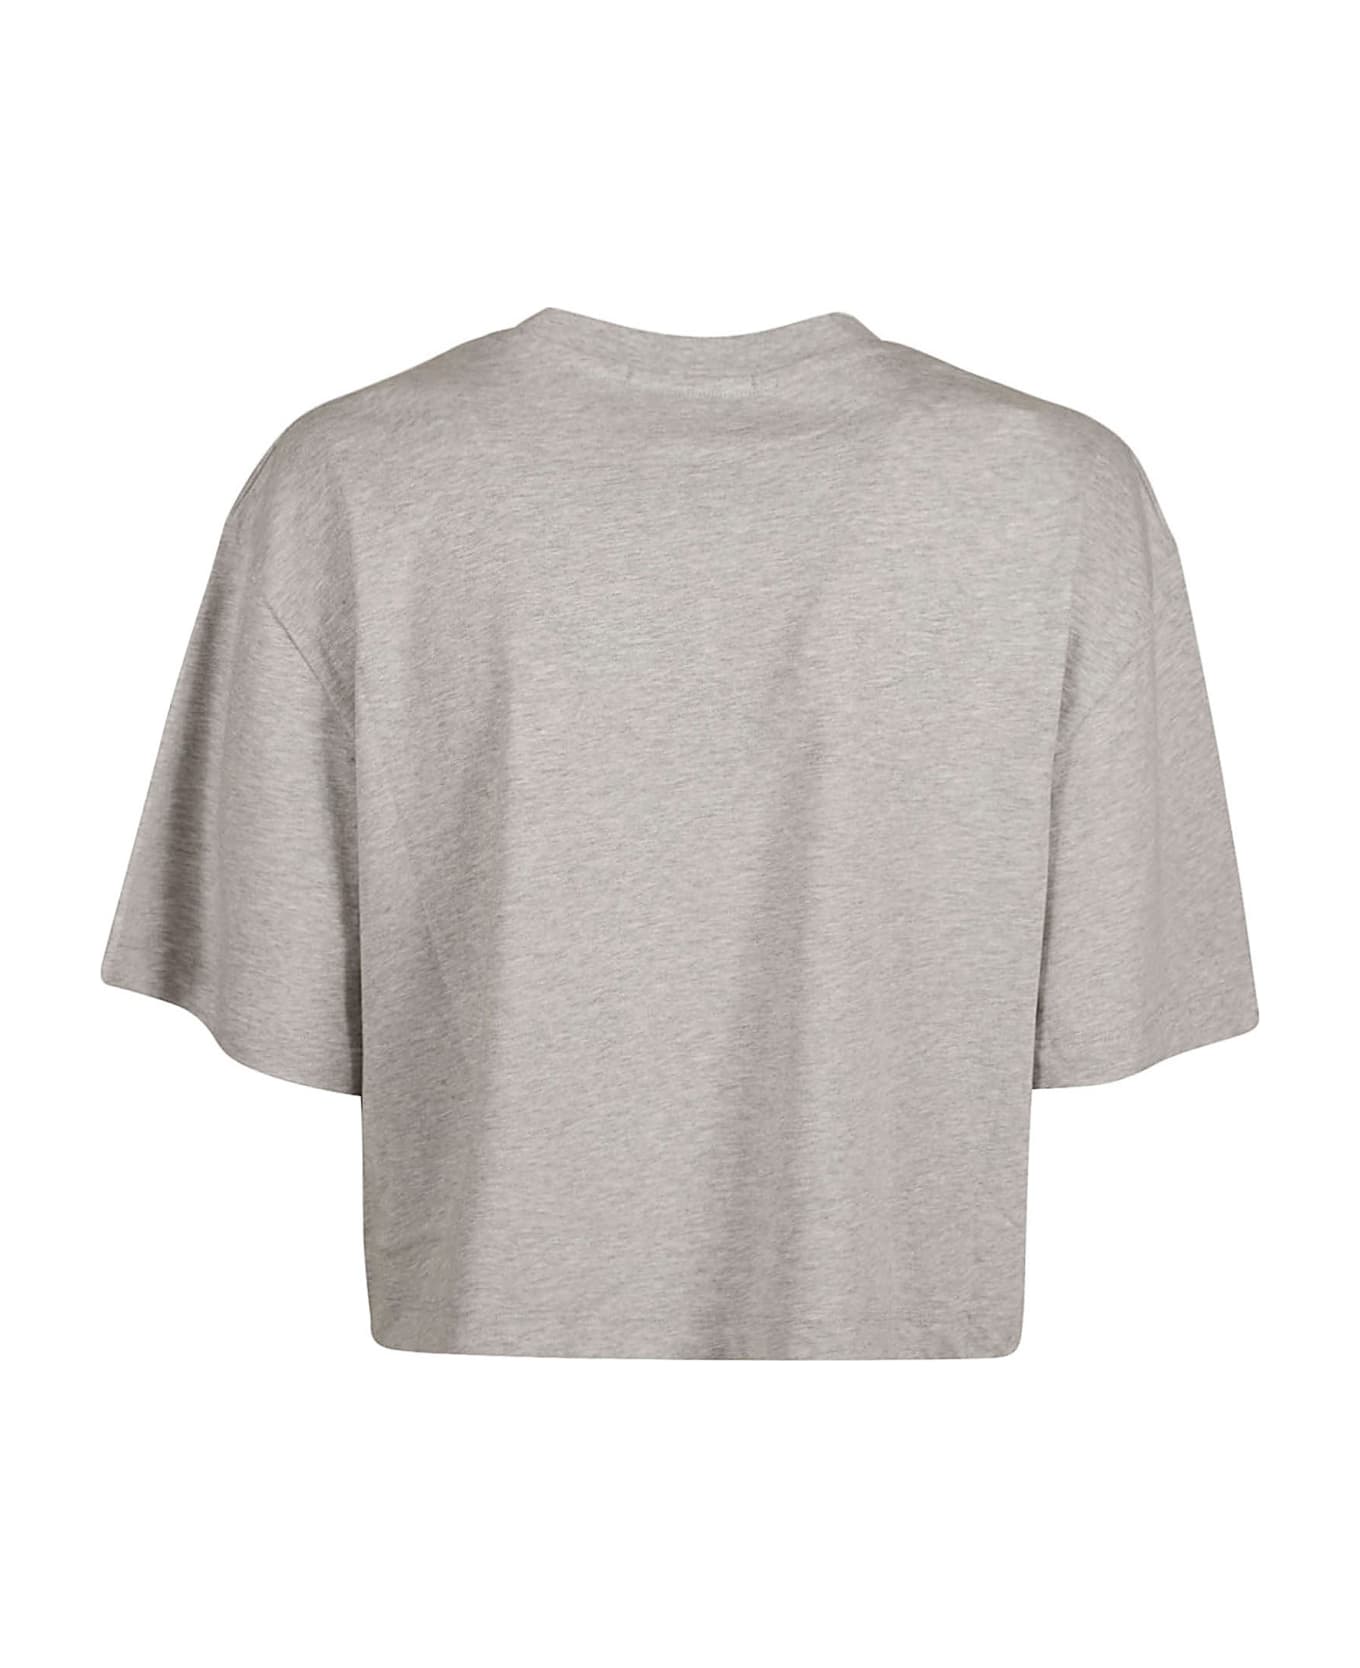 Giuseppe di Morabito Crystal Sleeves T-shirt - Grey